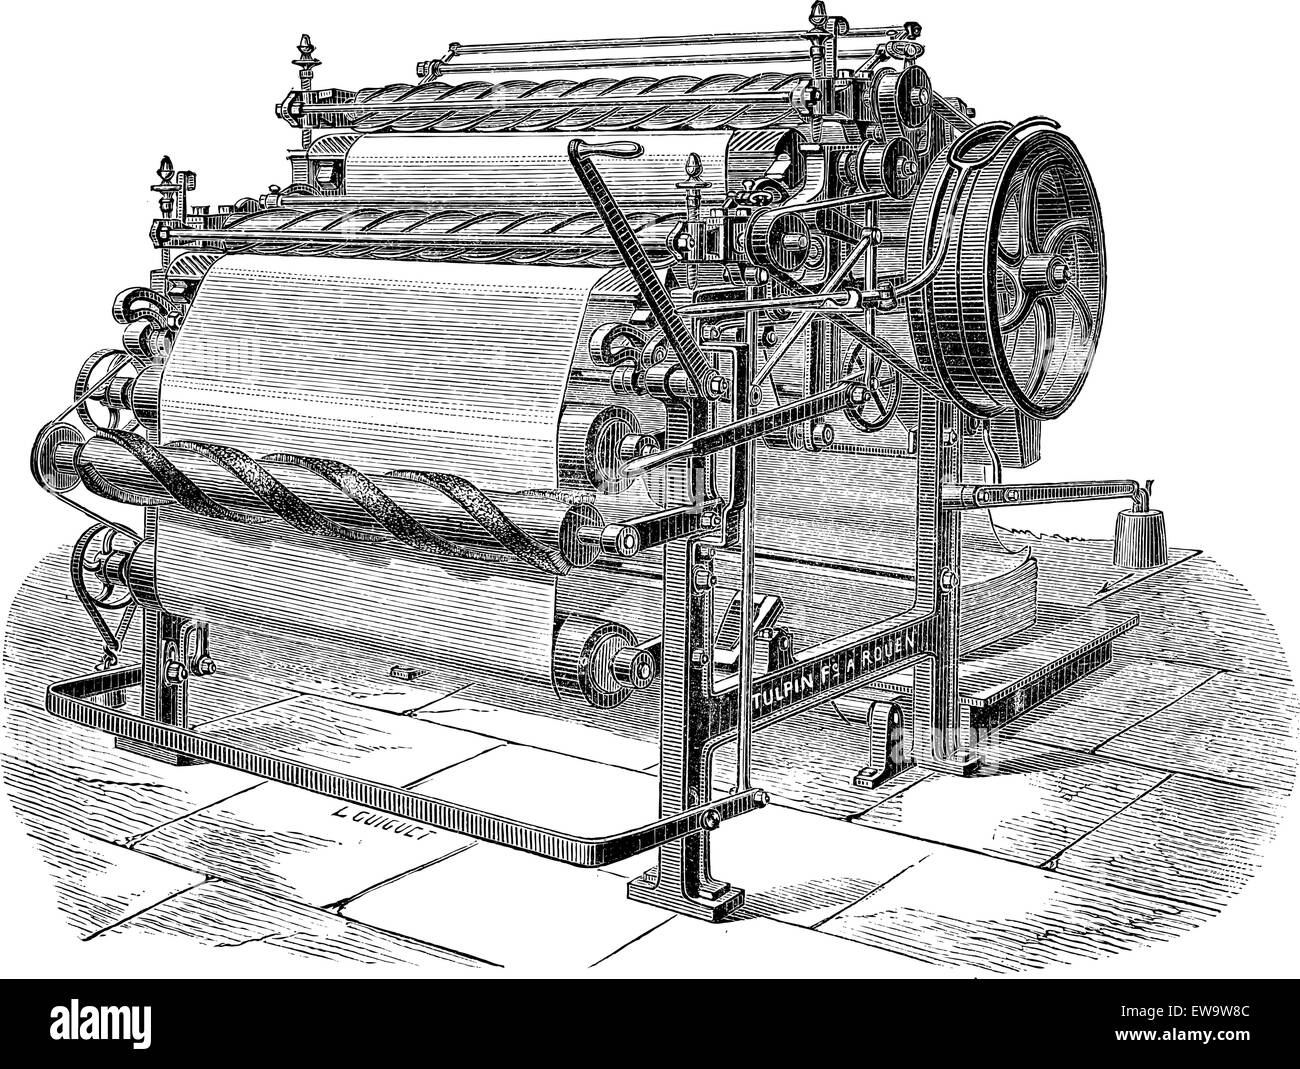 Papiermaschine mit zwei Zylindern, graviert Vintage Illustration. Industrielle Enzyklopädie - E.O Lami - 1875 Stock Vektor